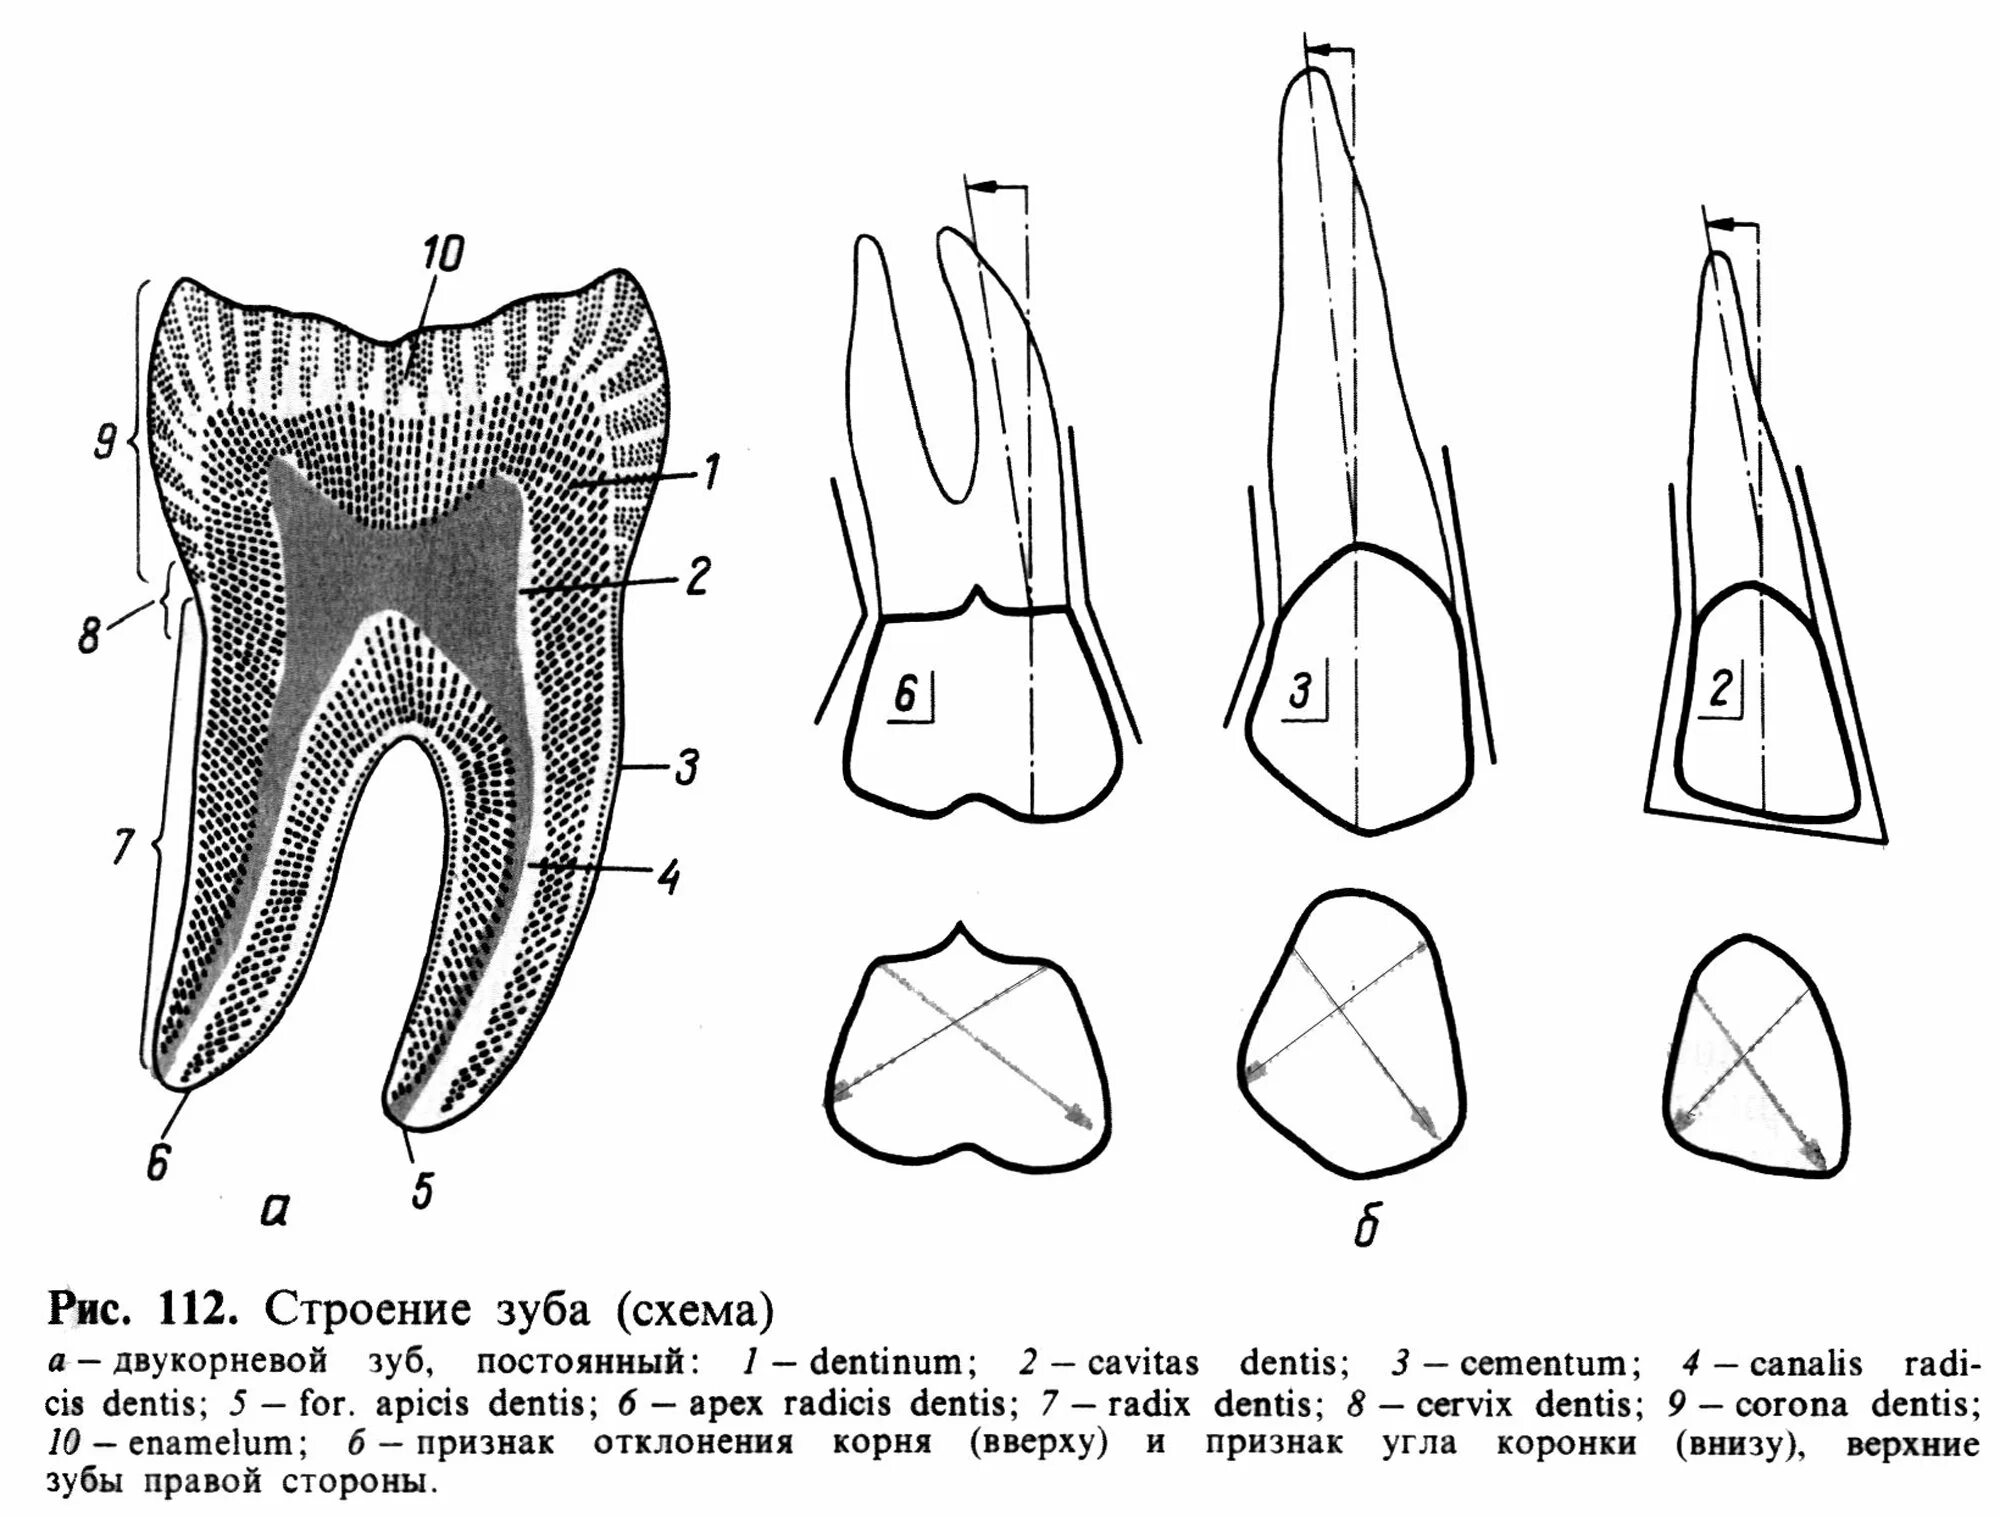 Строение зуба верхний моляр. Премоляр схема. Зуб 3.6 анатомия коронки. Схема анатомического строения зуба. Особенности строения зубной системы парнокопытных